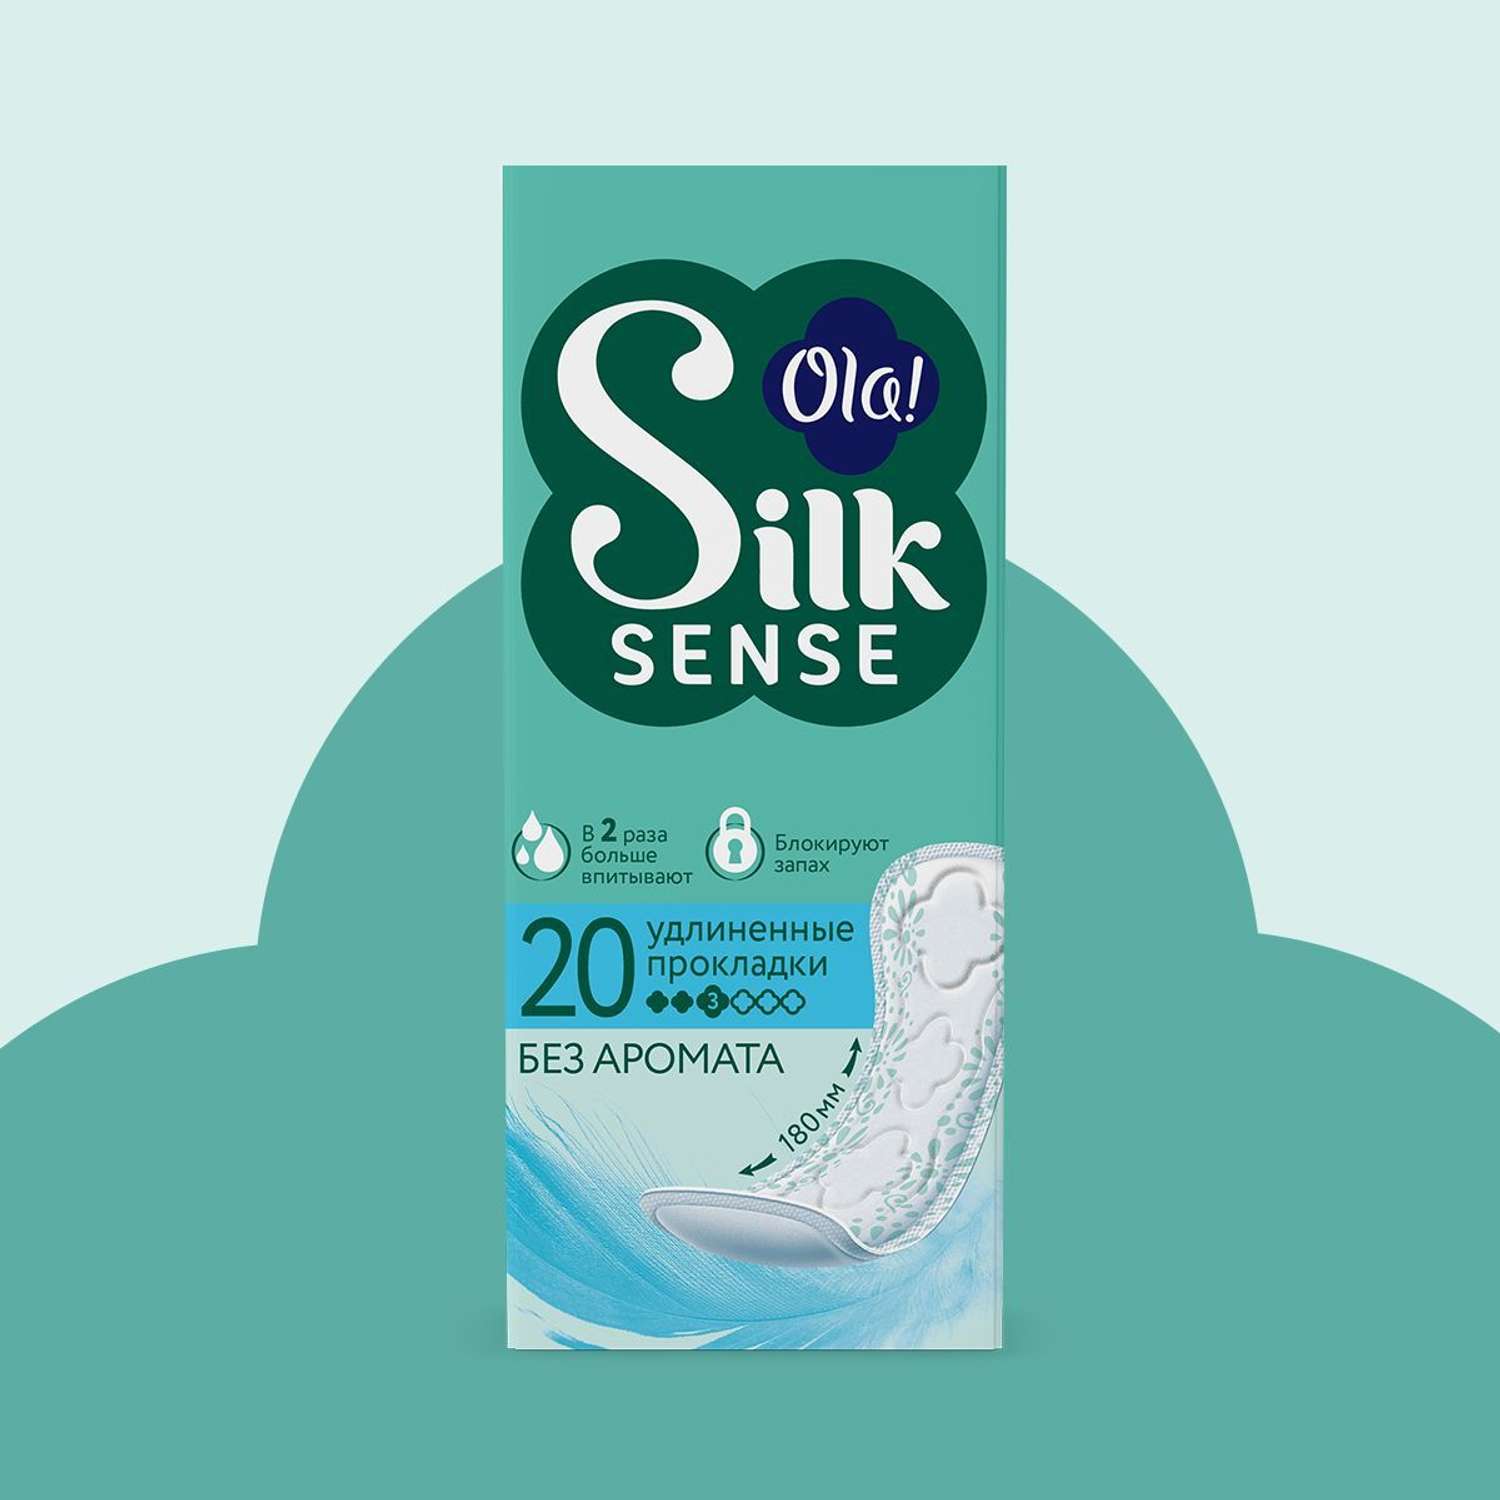 Ежедневные прокладки Ola! Silk Sense удлиненные 60 шт 3 уп по 20 шт - фото 2